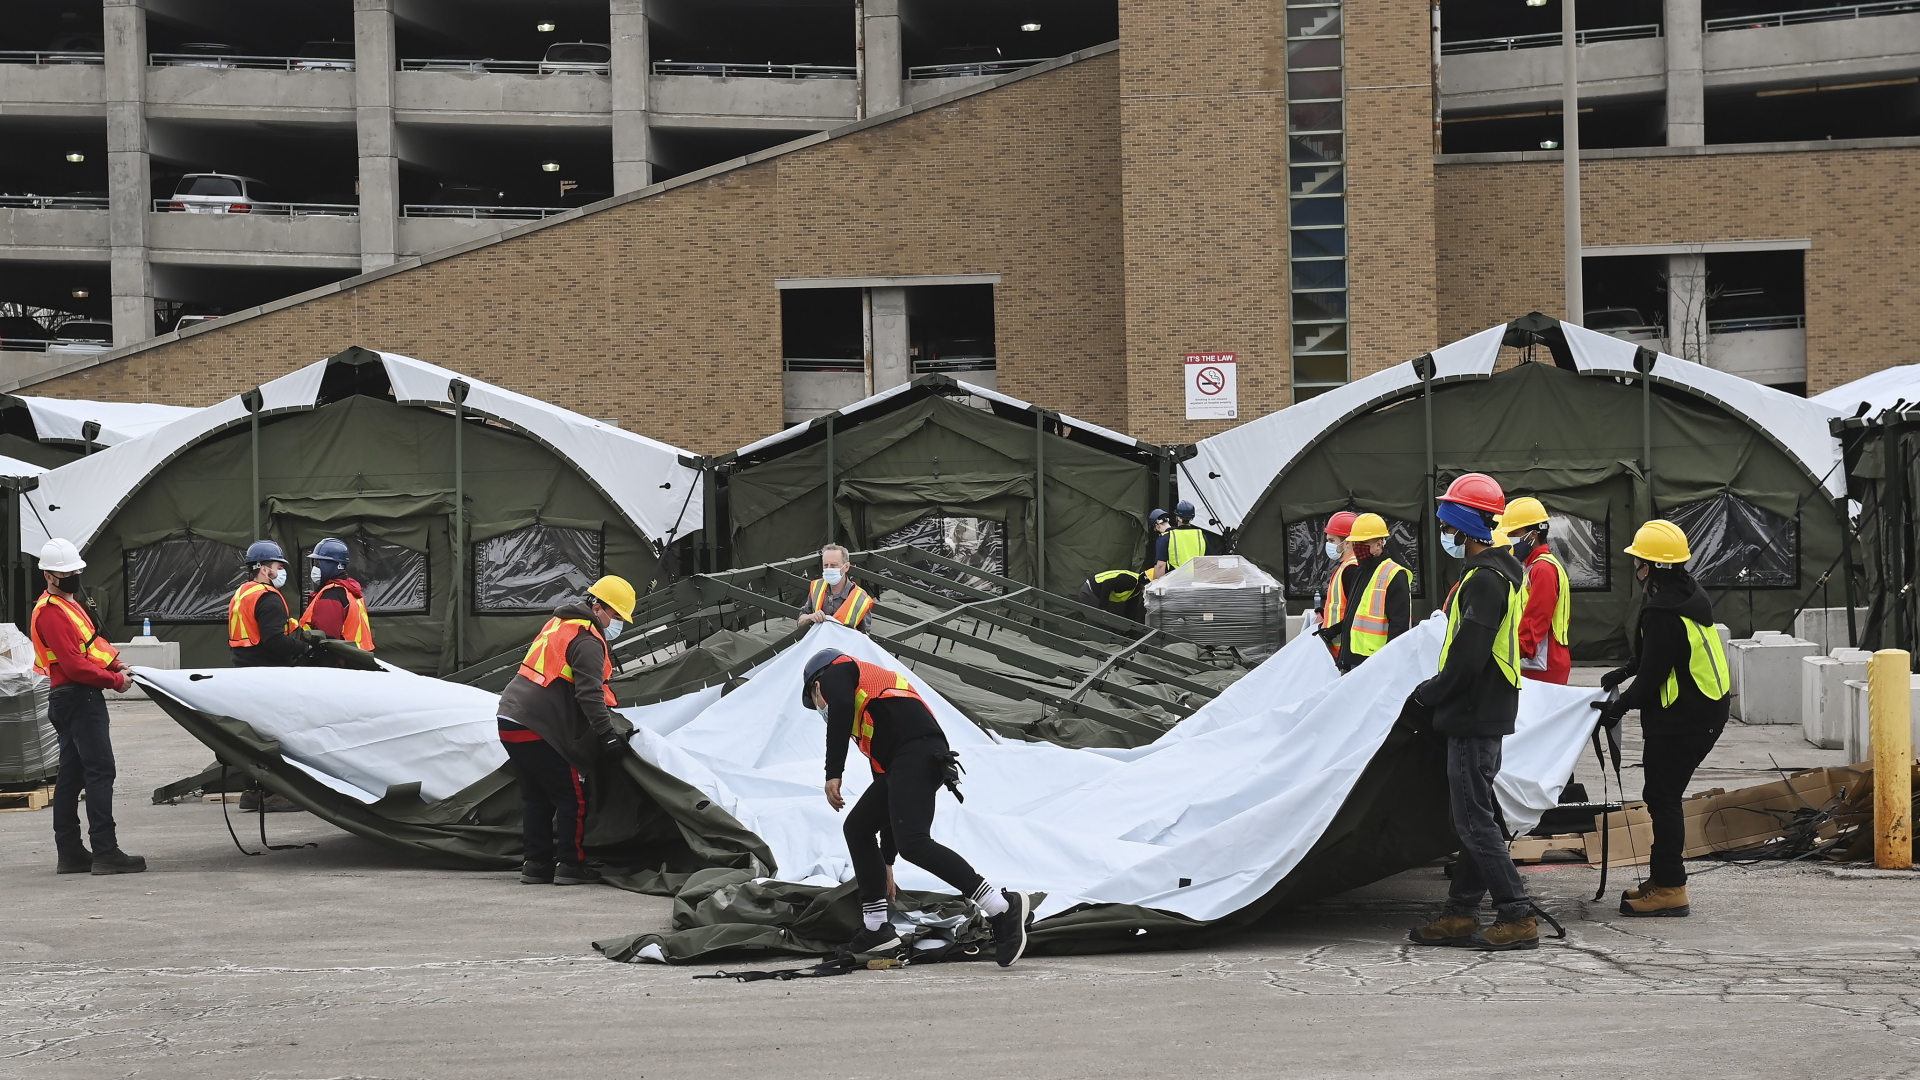 In Toronto (Kanada) werden Zelte für zusätzliche Behandlungskapazitäten gegen das Coronavirus aufgebaut | dpa